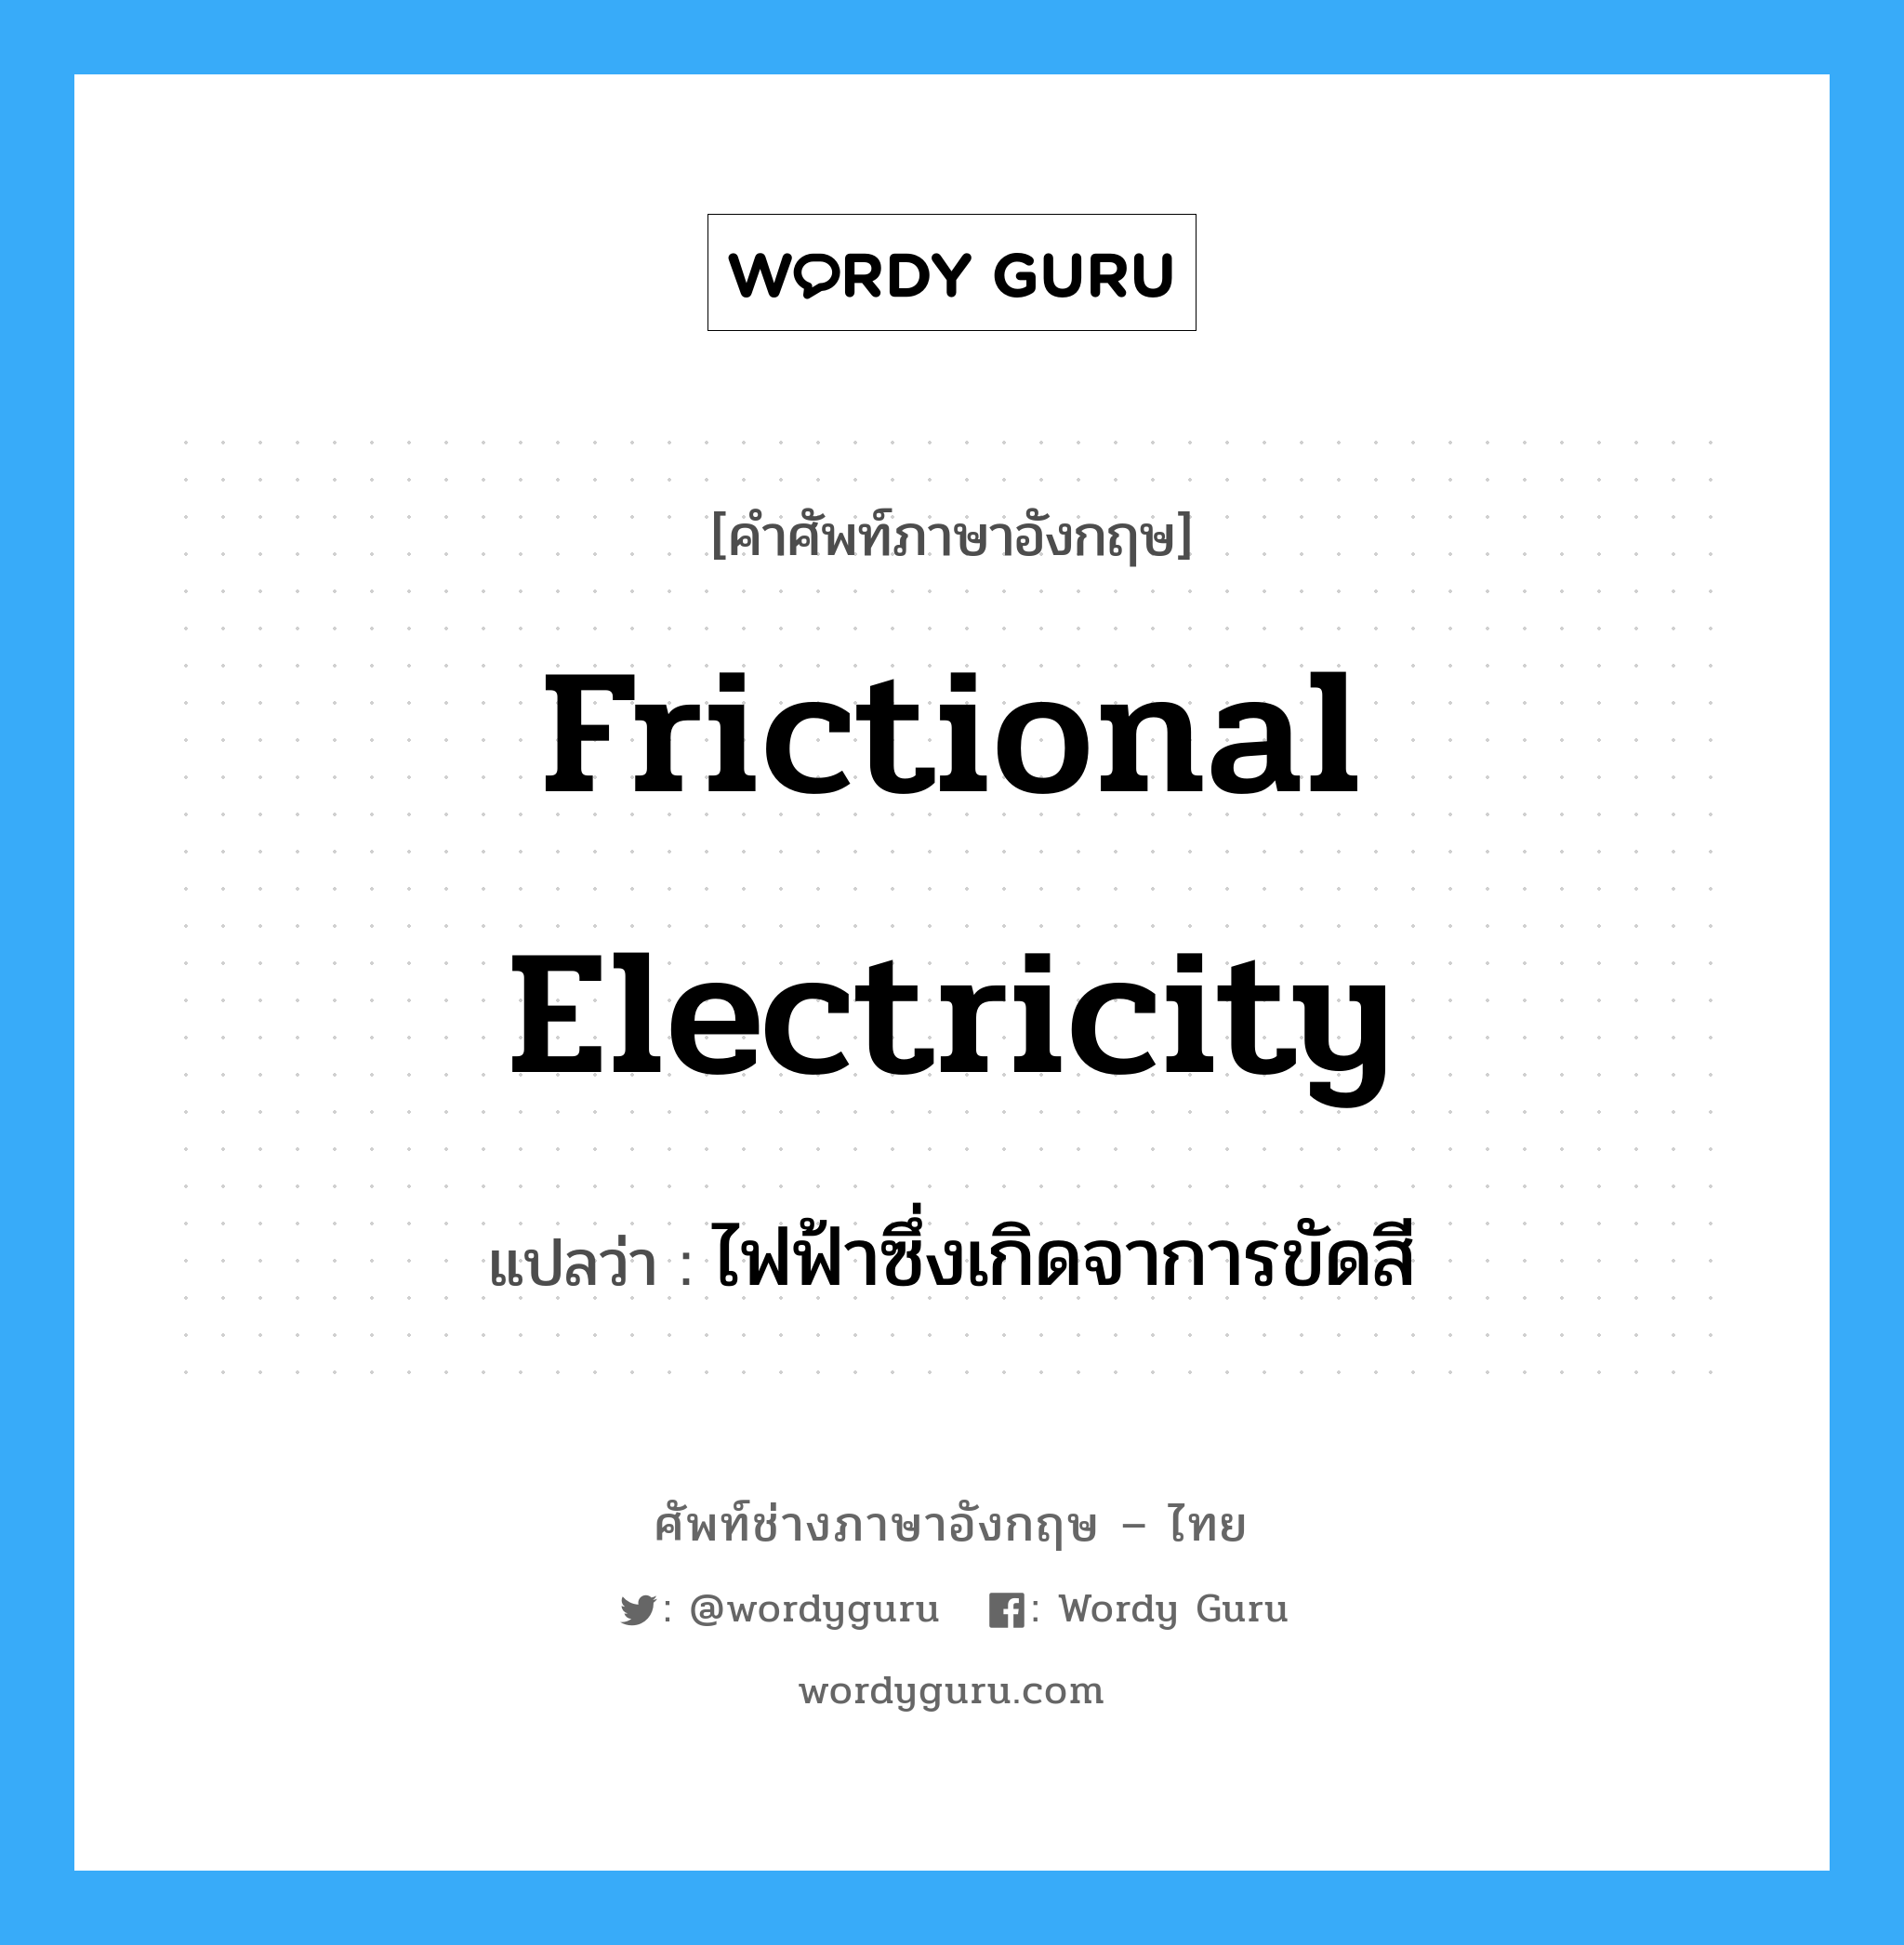 frictional electricity แปลว่า?, คำศัพท์ช่างภาษาอังกฤษ - ไทย frictional electricity คำศัพท์ภาษาอังกฤษ frictional electricity แปลว่า ไฟฟ้าซึ่งเกิดจาการขัดสี